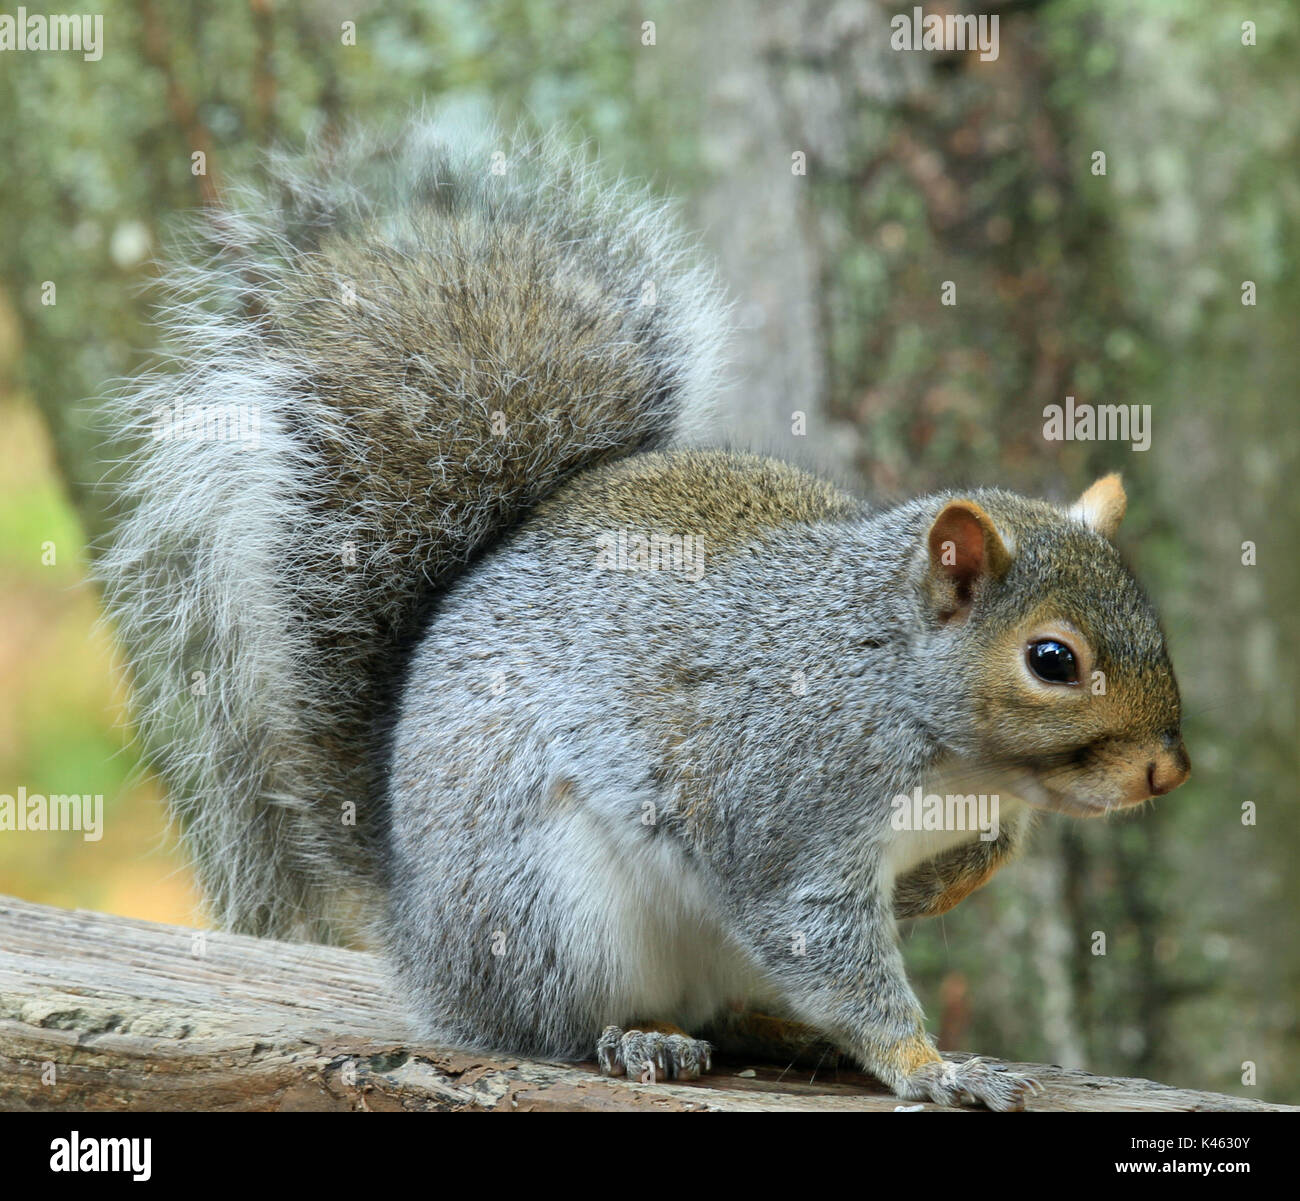 Nahaufnahme einer chubby östlichen Grauhörnchen (sciurus carolinensis) Sitzen auf einem Holzdeck Geländer Stockfoto